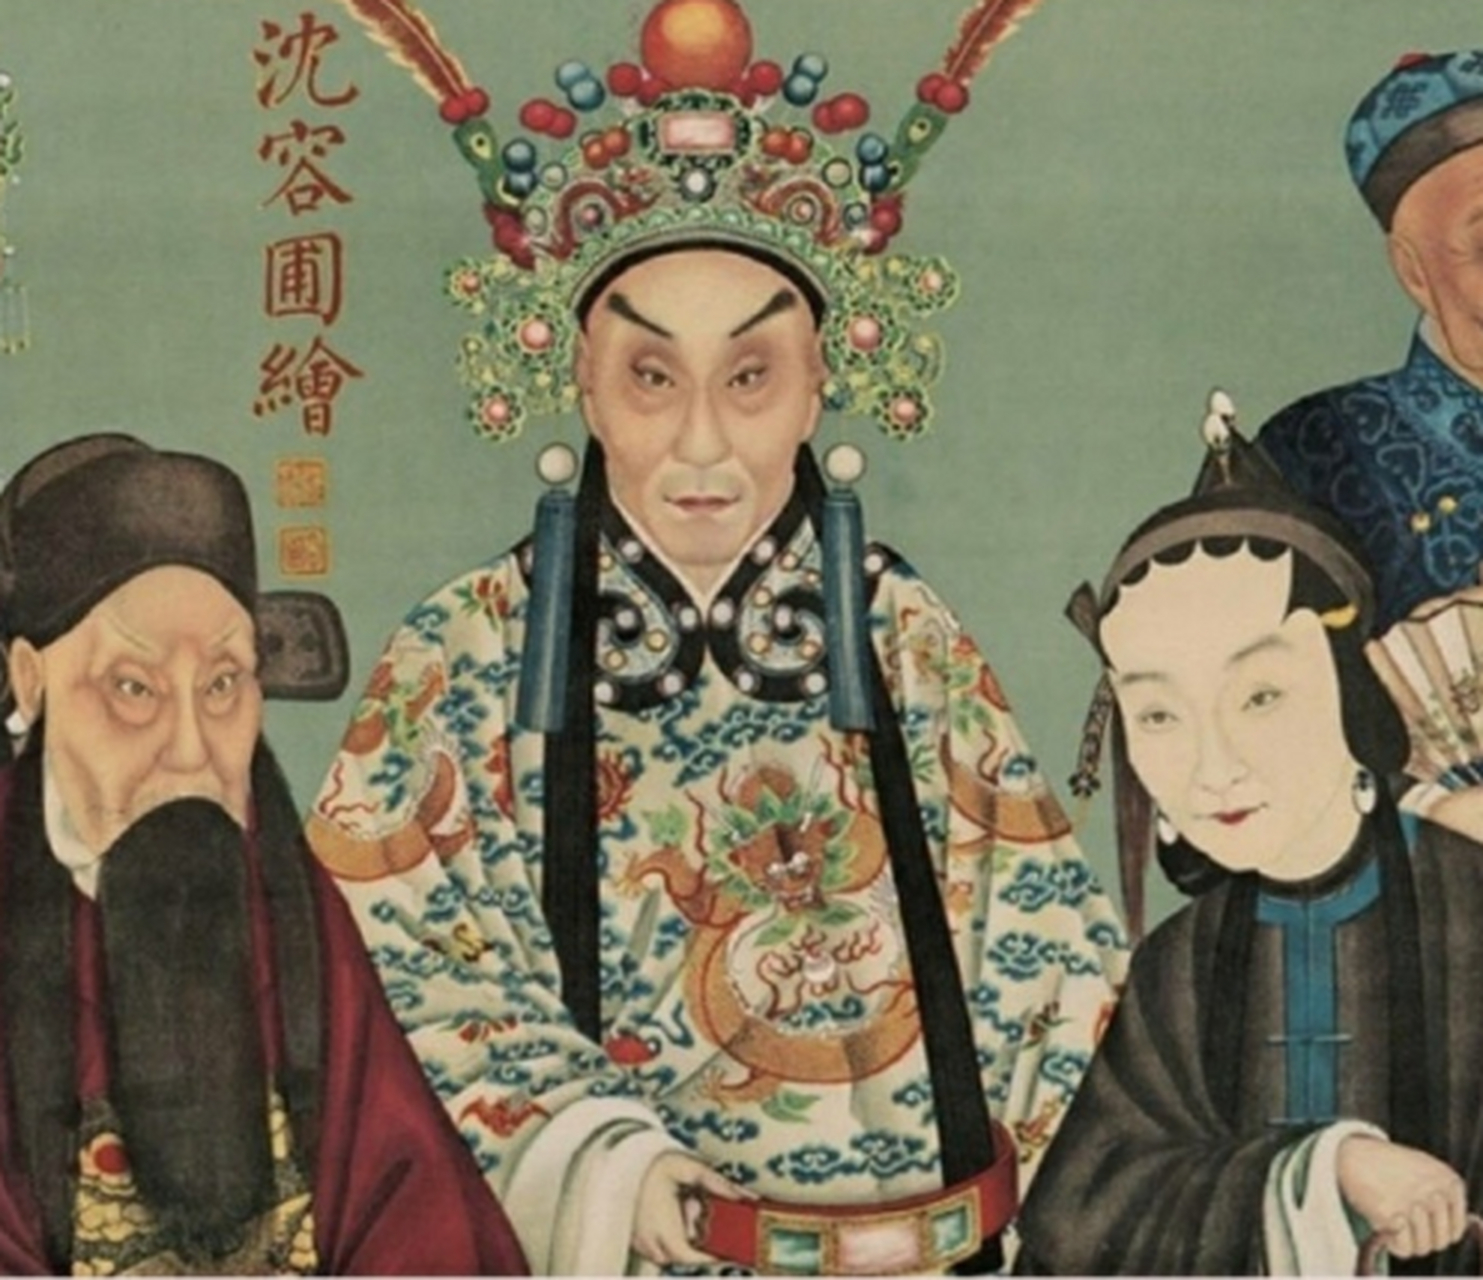 【京剧诞生】1791年1月12日:四大徽班进京祝寿,受到乾隆青睐,就留在